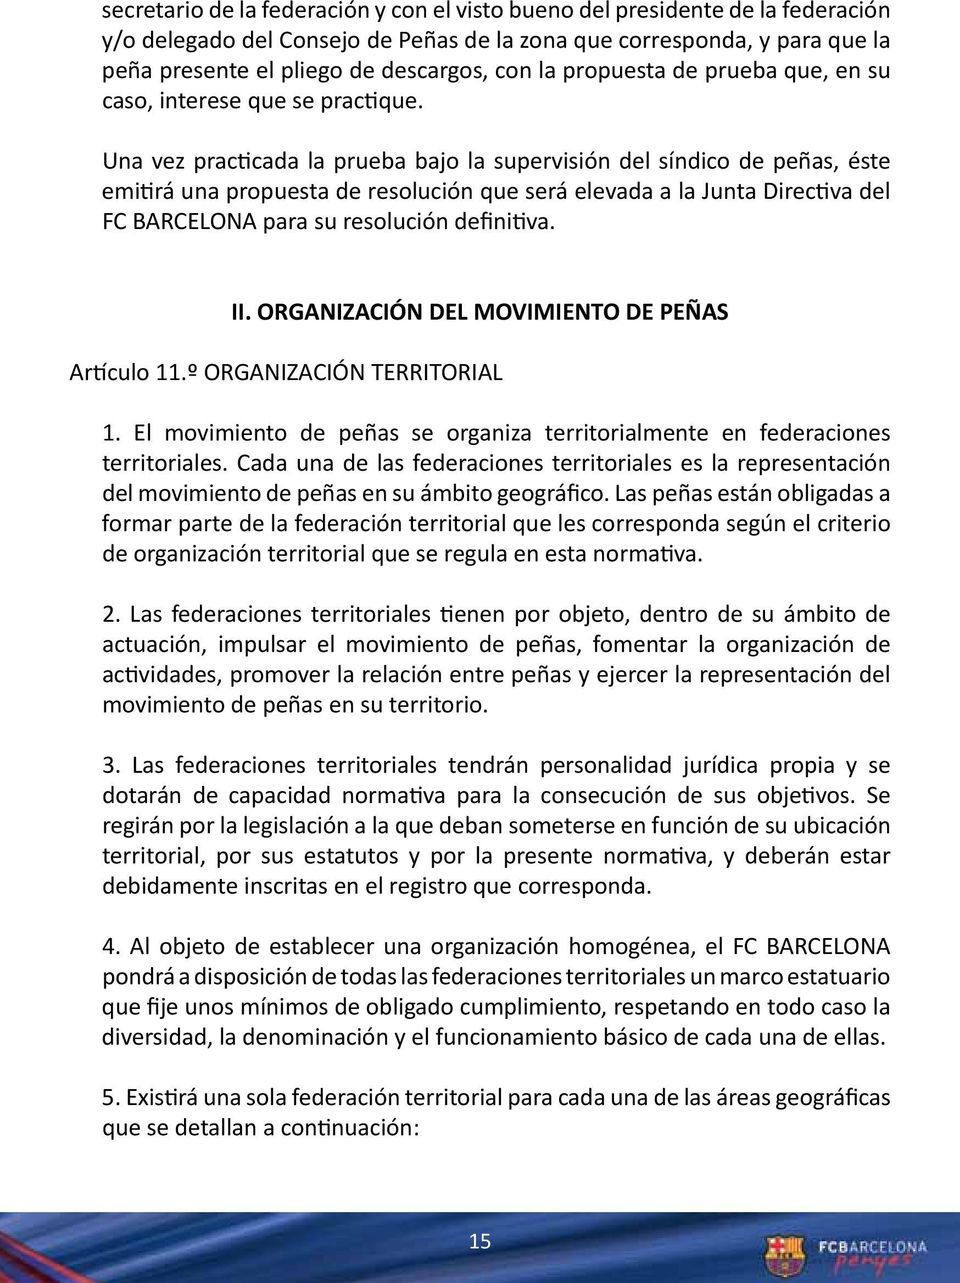 Una vez practicada la prueba bajo la supervisión del síndico de peñas, éste emitirá una propuesta de resolución que será elevada a la Junta Directiva del FC BARCELONA para su resolución definitiva.